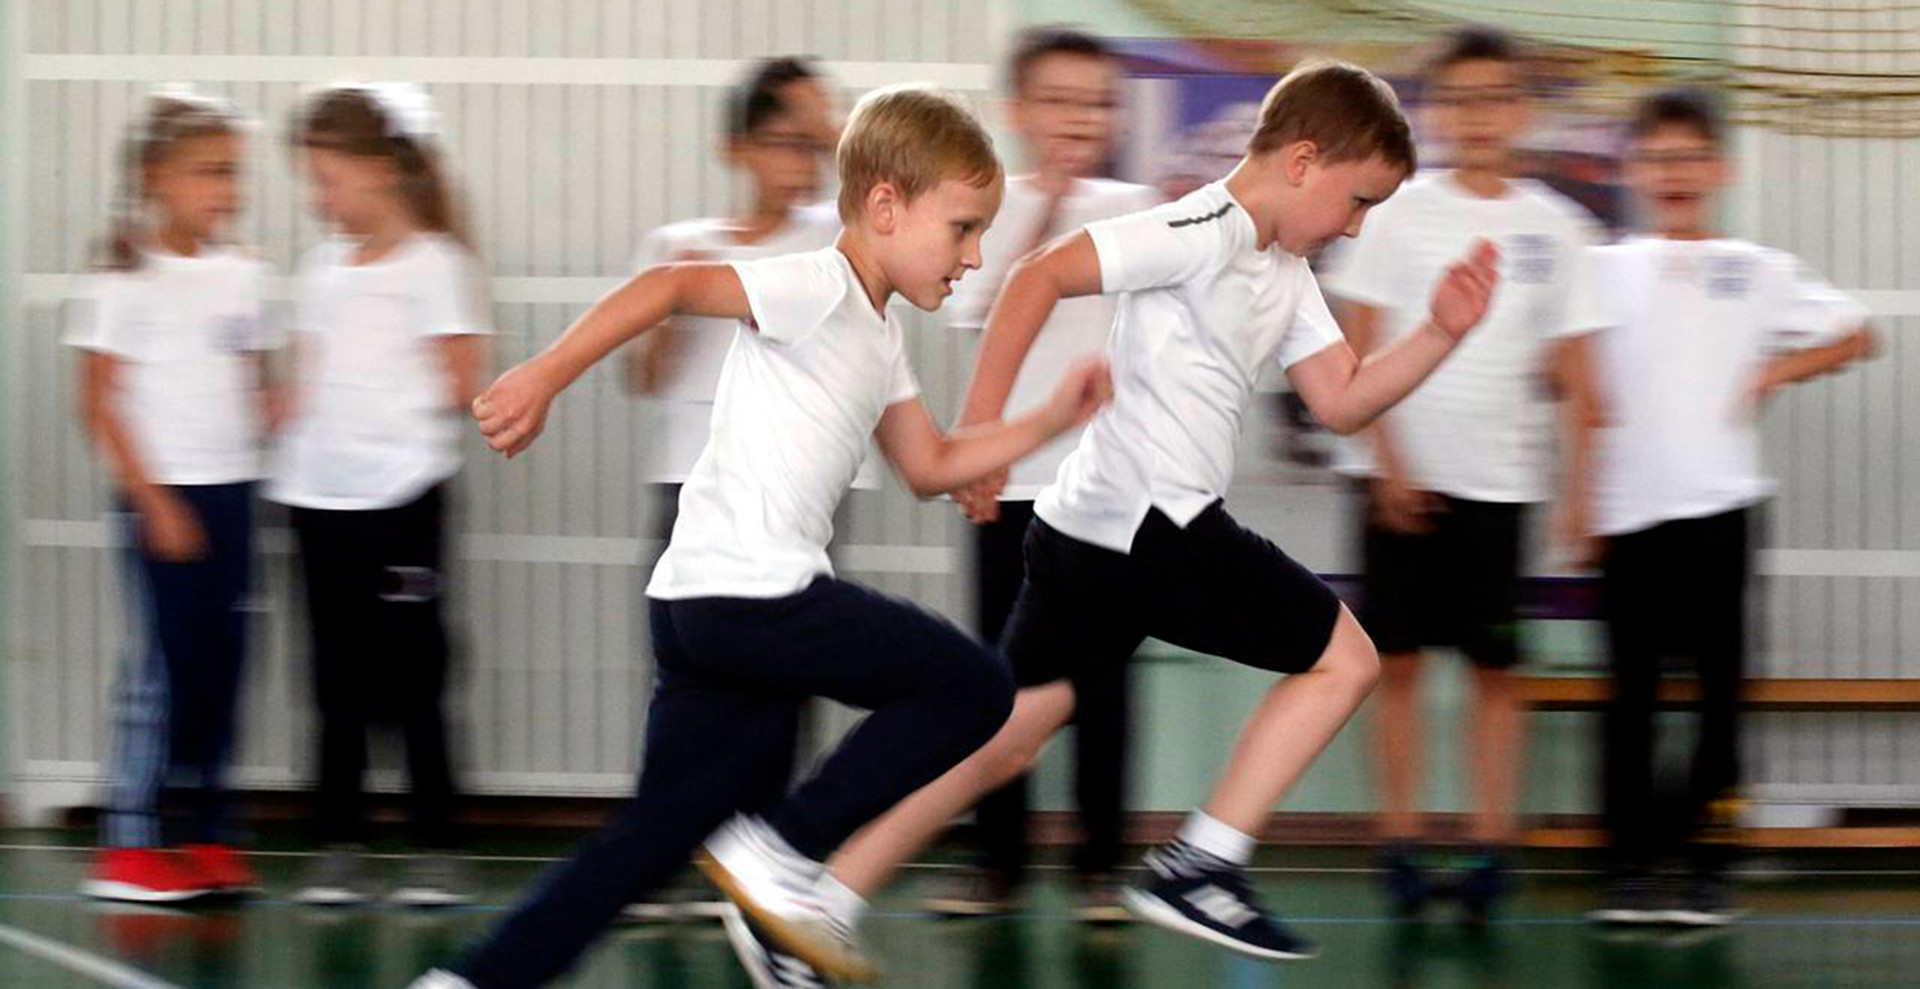 Естафети, віртуальний спорт і нові види активностей: як заохочувати школярів займатись фізкультурою?